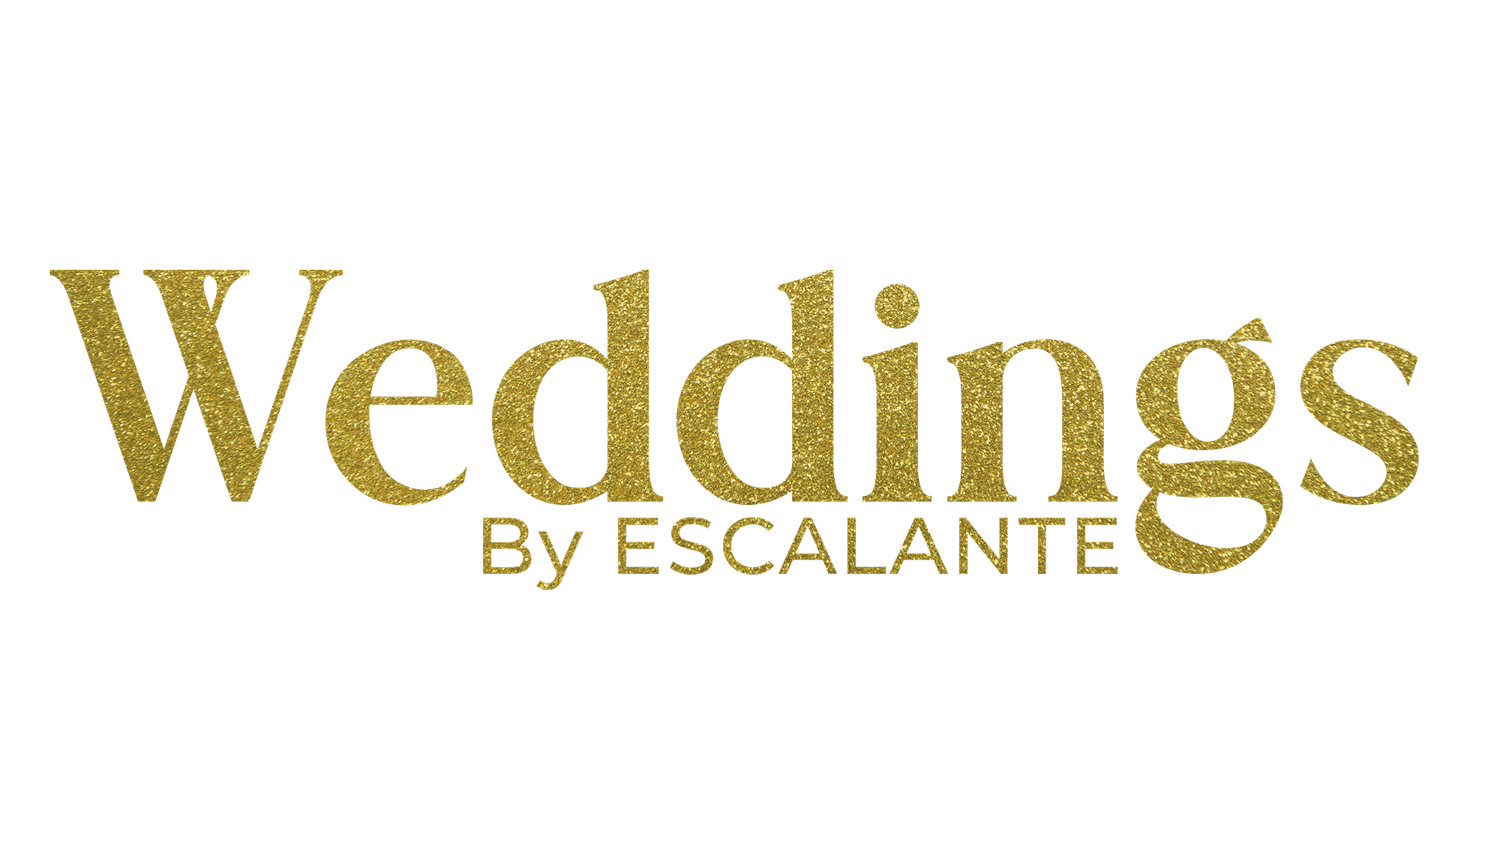 Weddings By Escalante